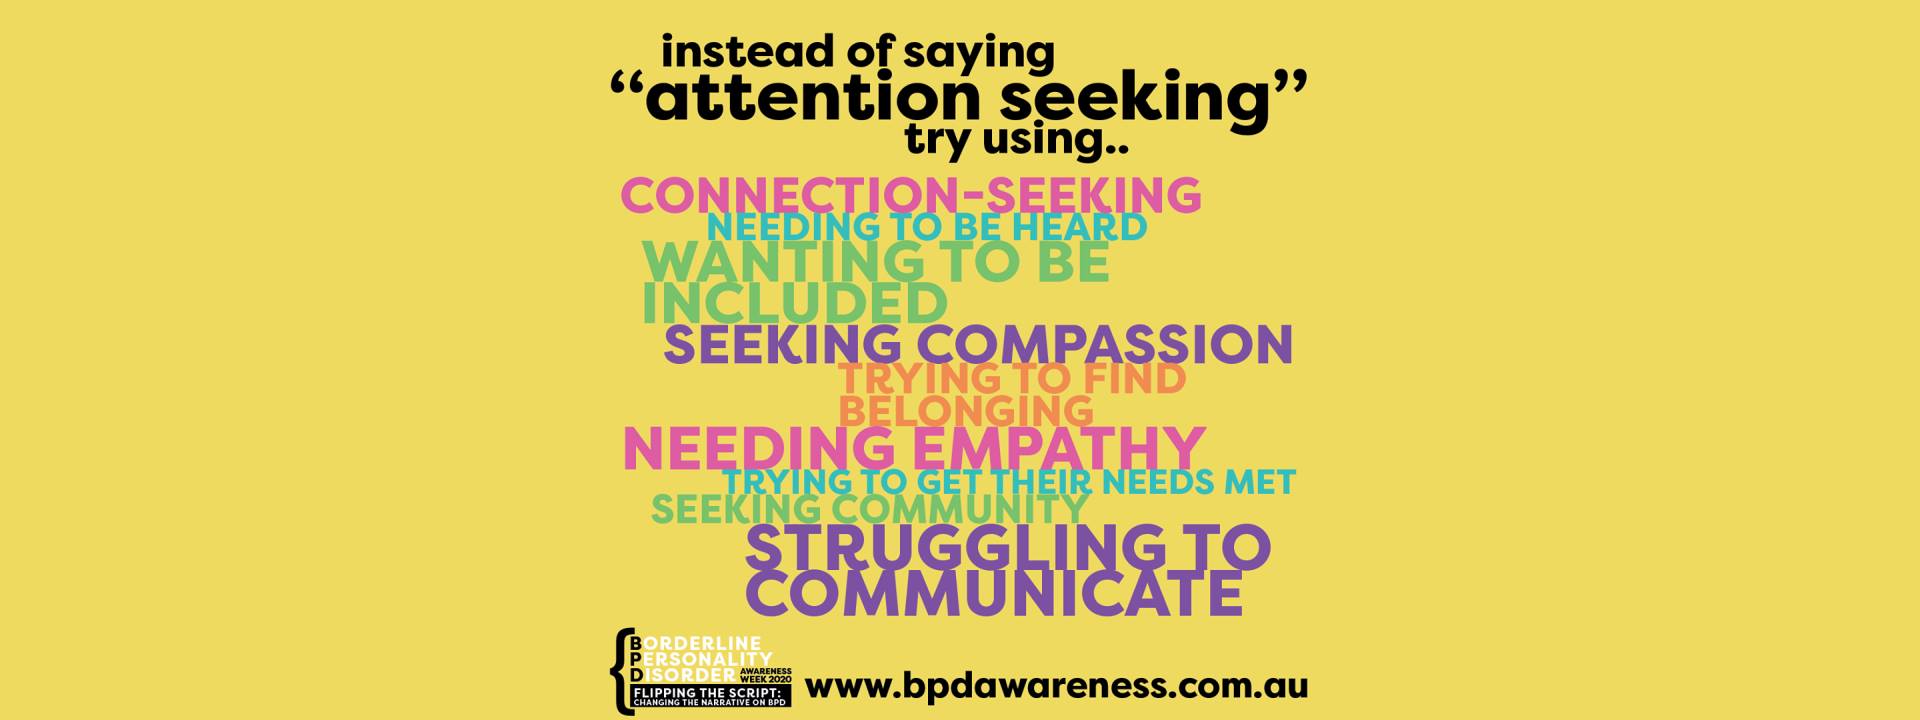 BPD Awareness Week - Not Attention Seeking